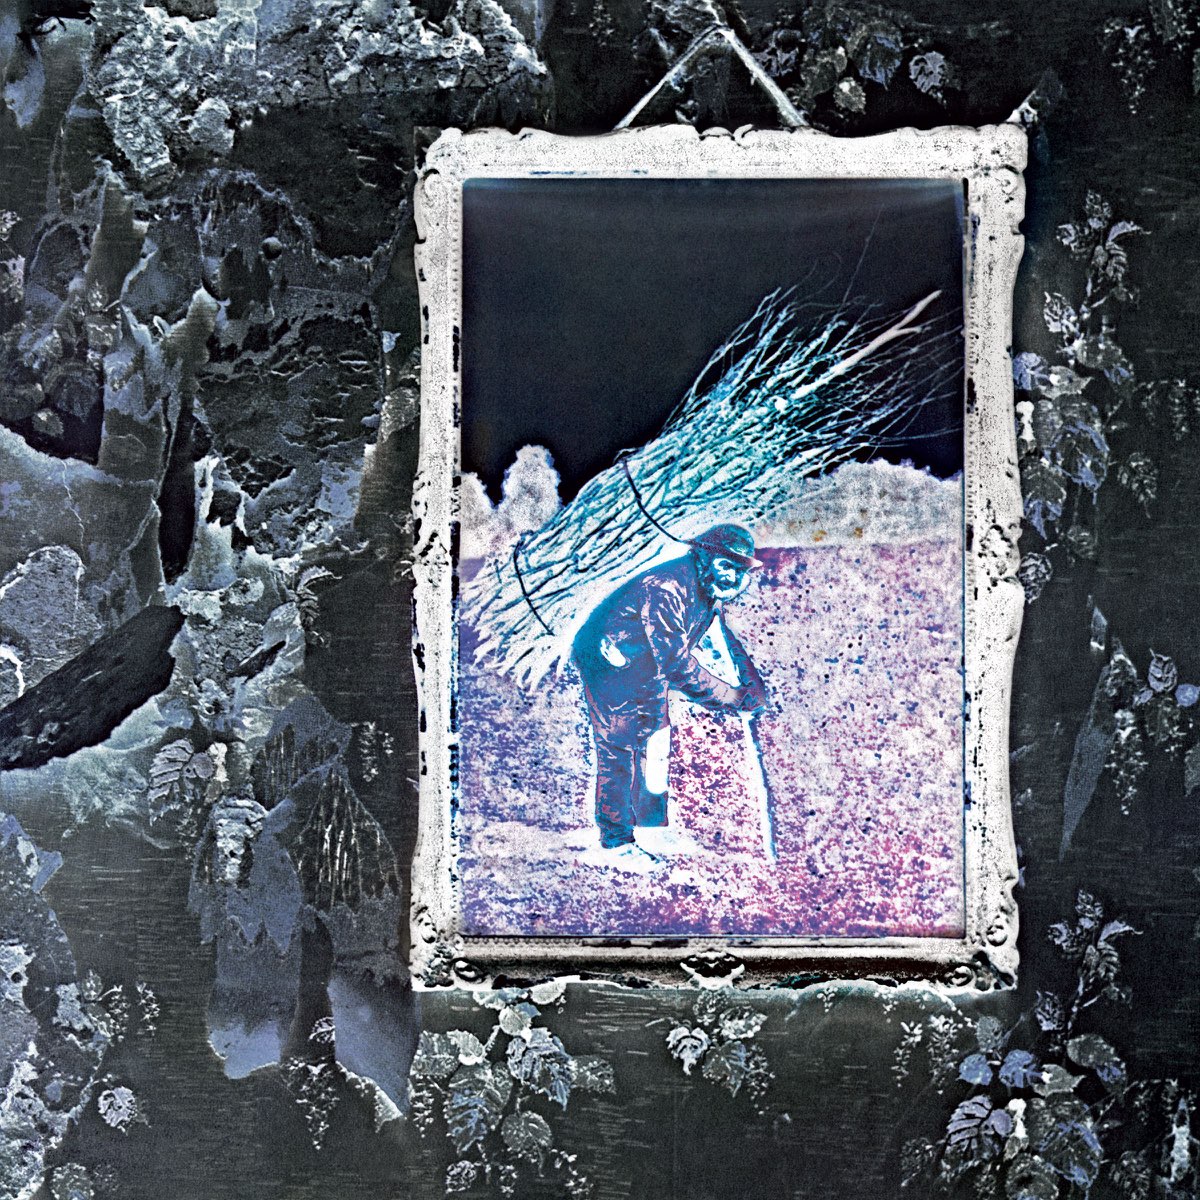 ‎Led Zeppelin IV (Deluxe Edition) - Album by Led Zeppelin - Apple Music